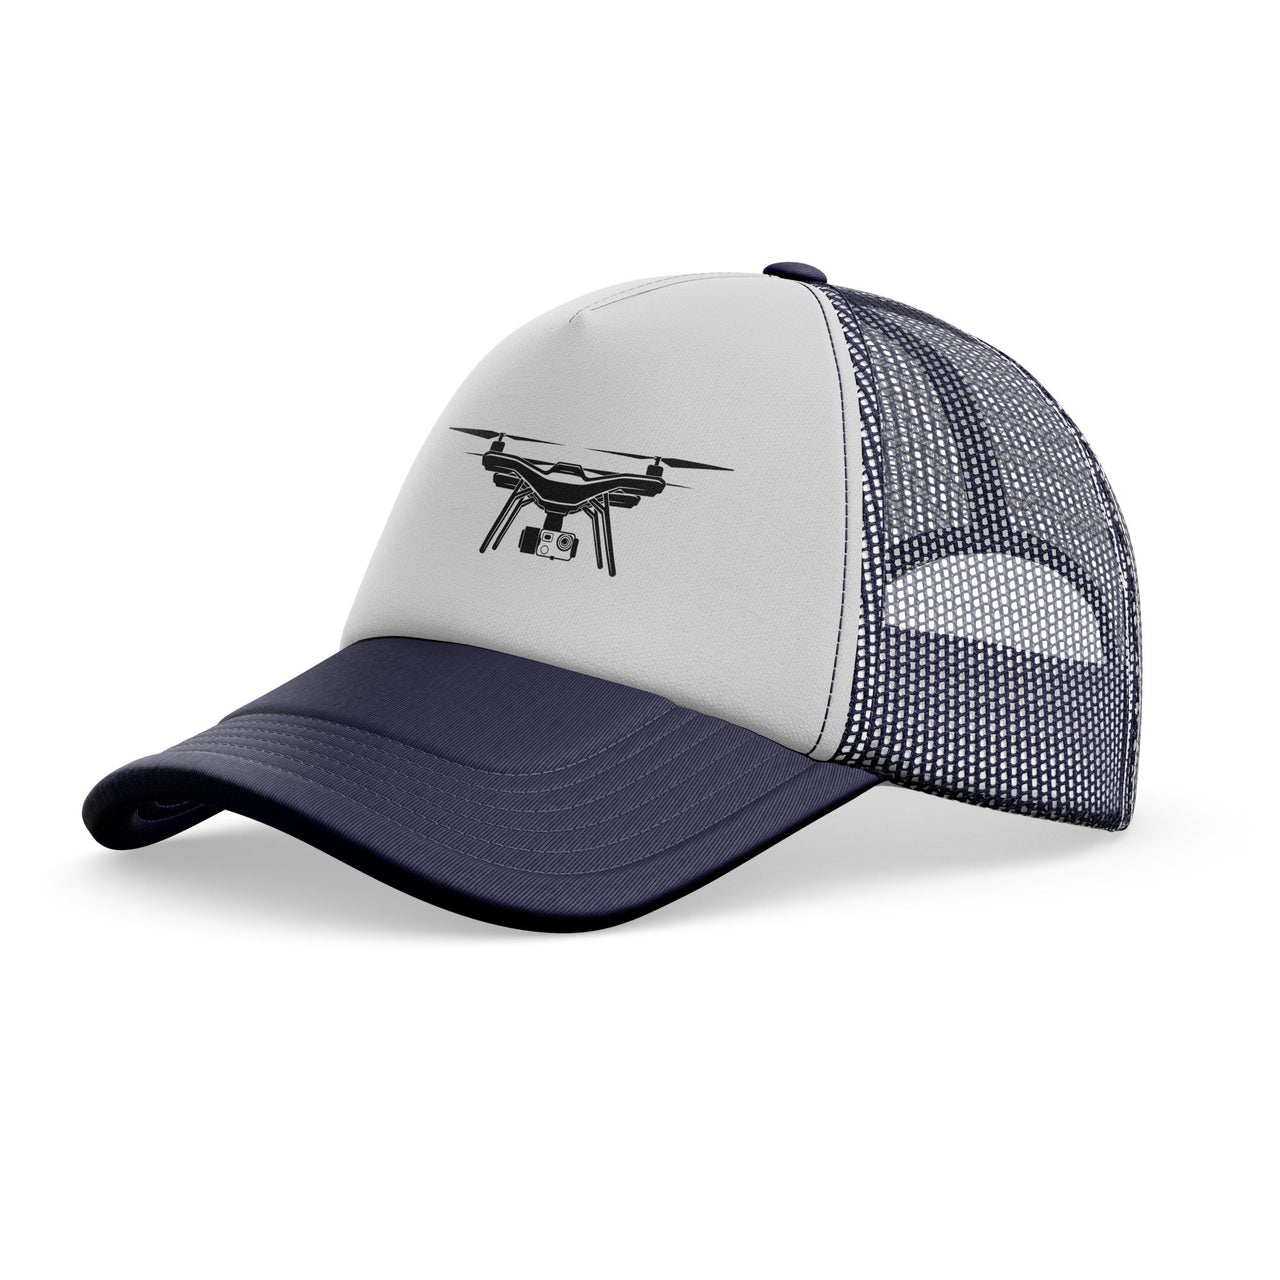 Drone Silhouette Designed Trucker Caps & Hats